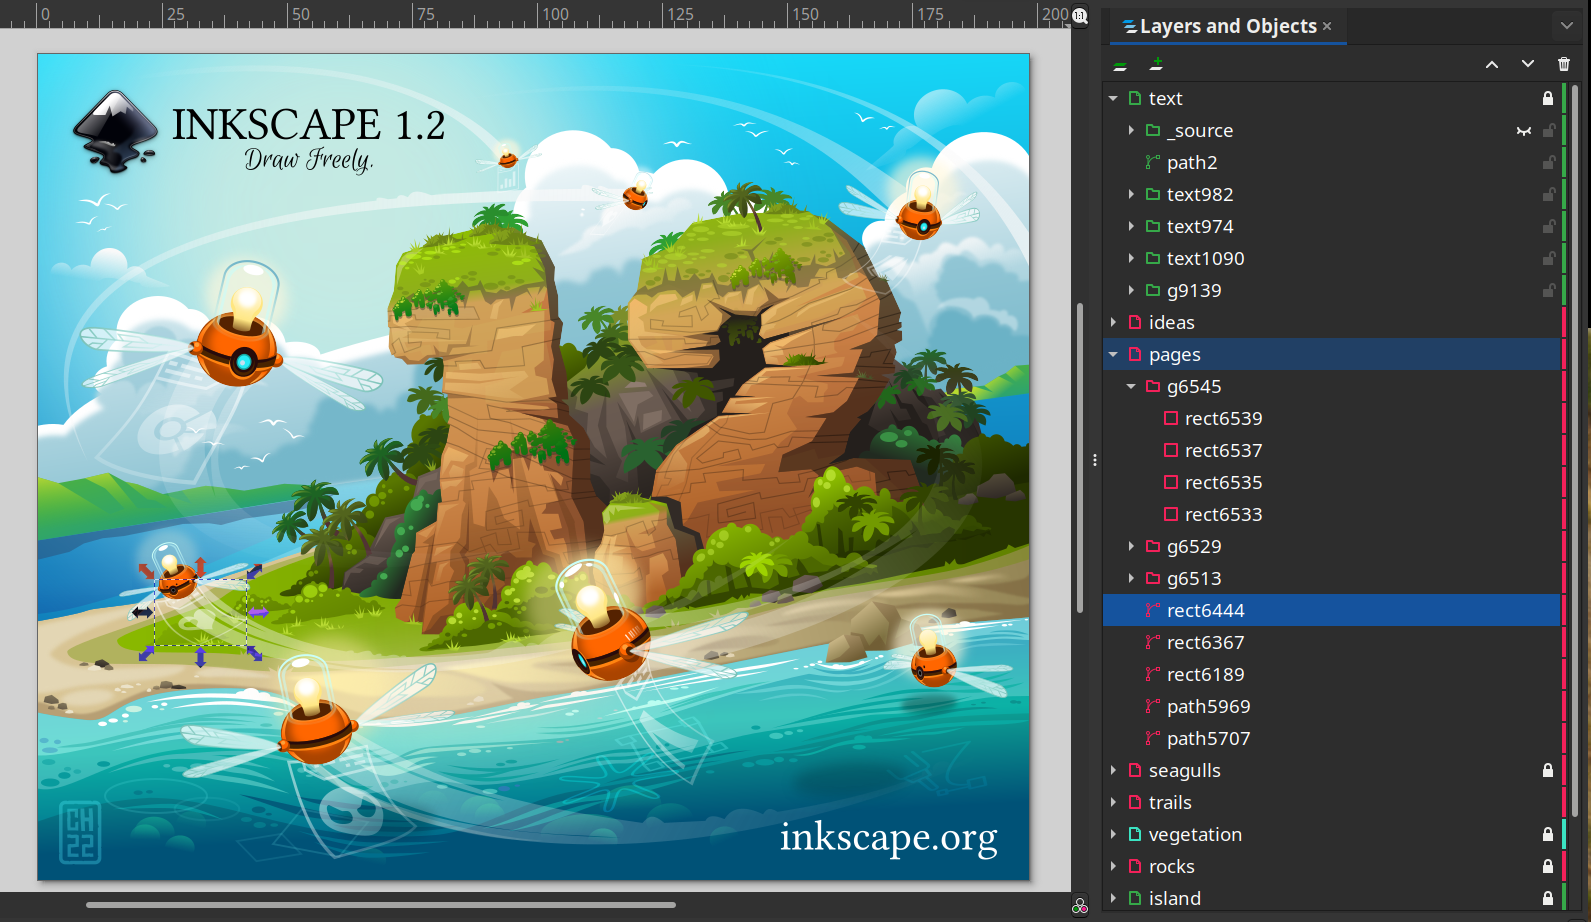 开源矢量图形编辑器Inkscape1.2最新版本发布